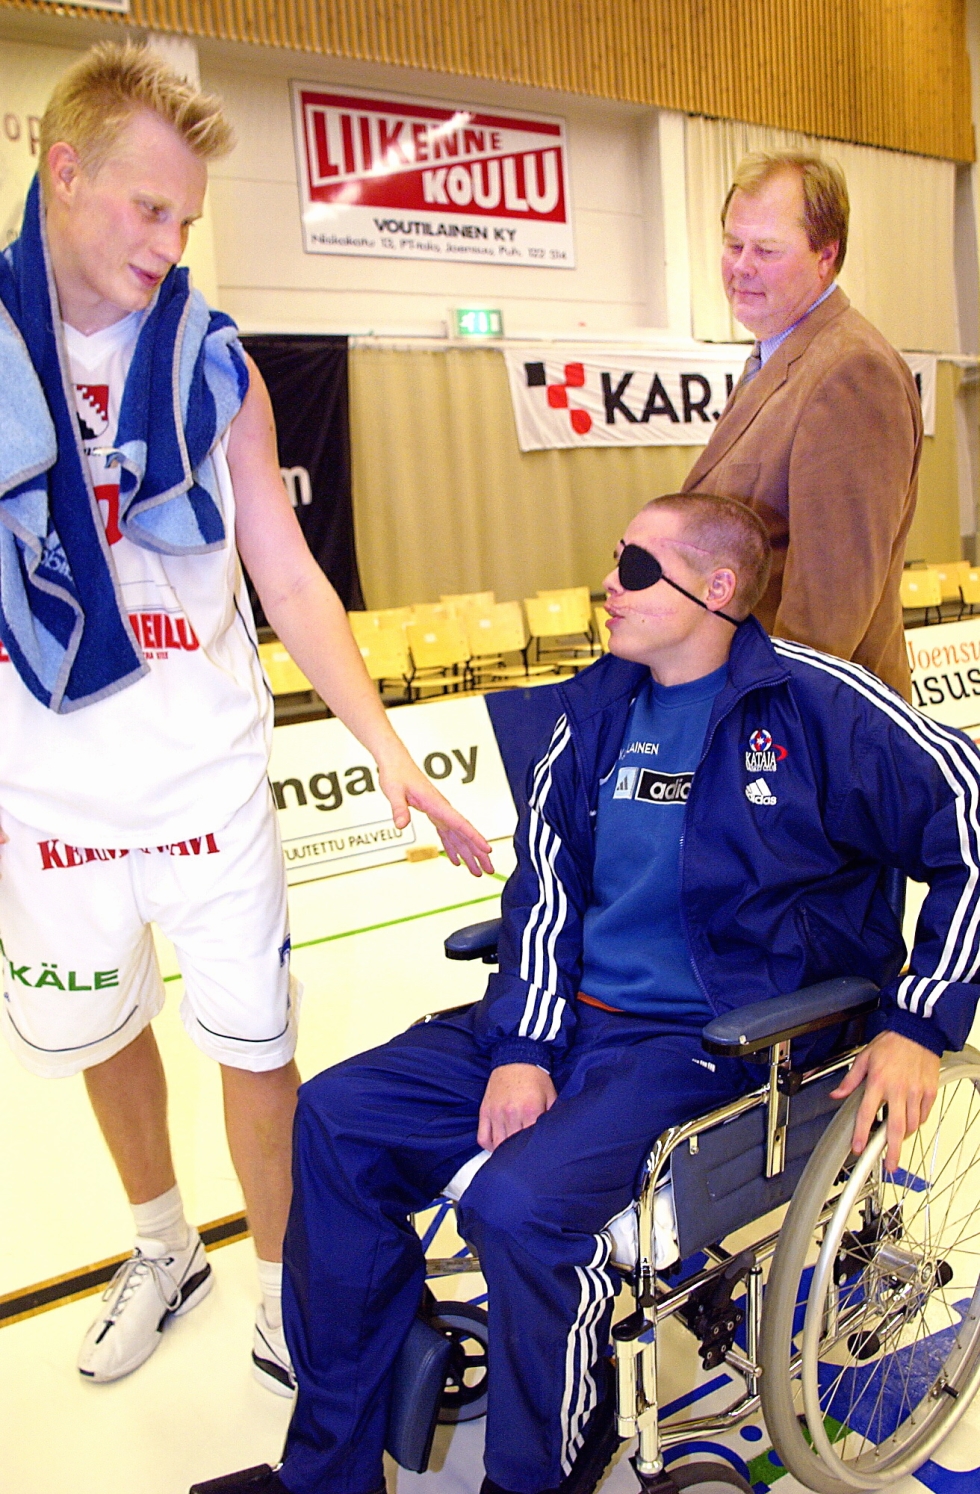 Edellisestä kuvasta oli kulunut vajaa vuosi, kun Mika Piironen palasi Joensuun urheilutalon parketille pyörätuolissa. Hän sai lämpimän vastaanoton Petri Jaakkolalta (vas.) ja joukkueenjohtaja Jukka Törmälältä.